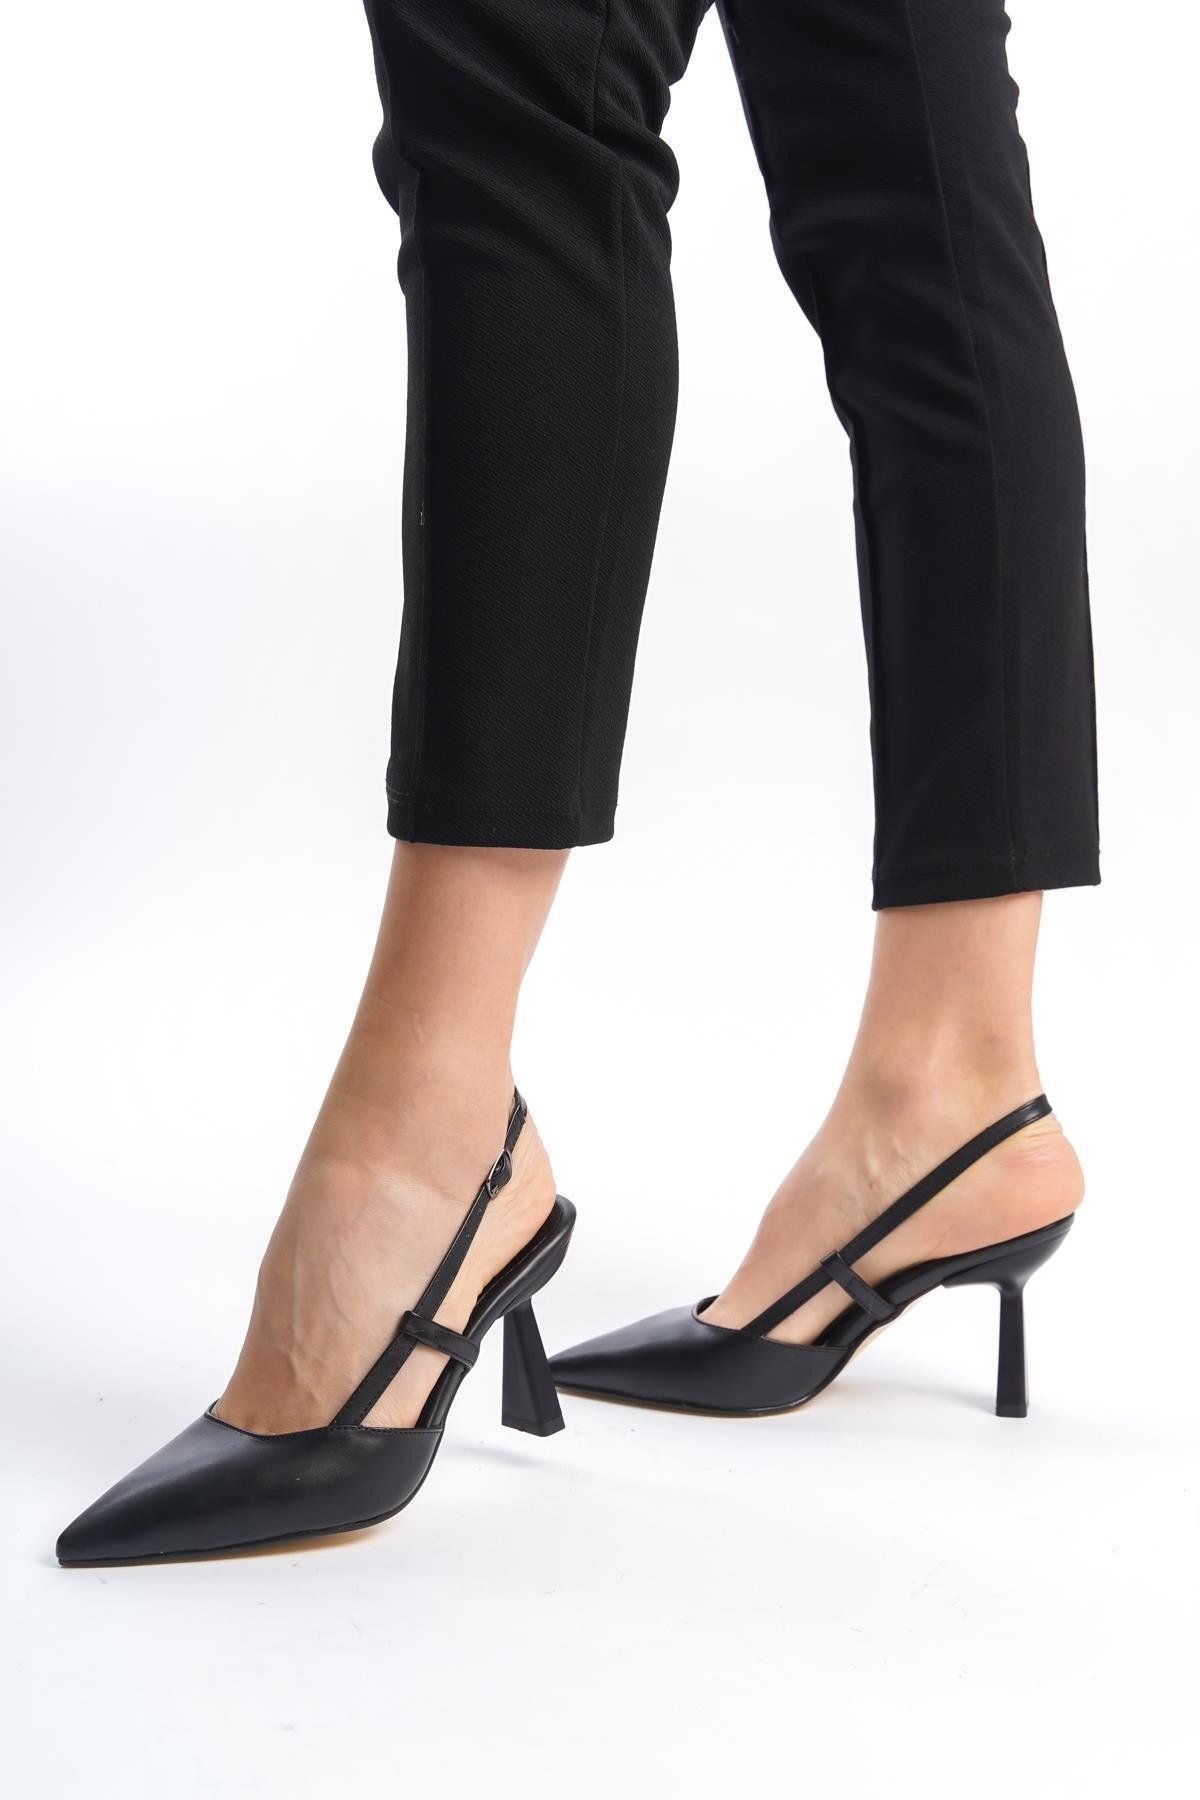 NiceDiffer Kadın Siyah Sivri Burun Yüksek Topuklu Ayakkabı